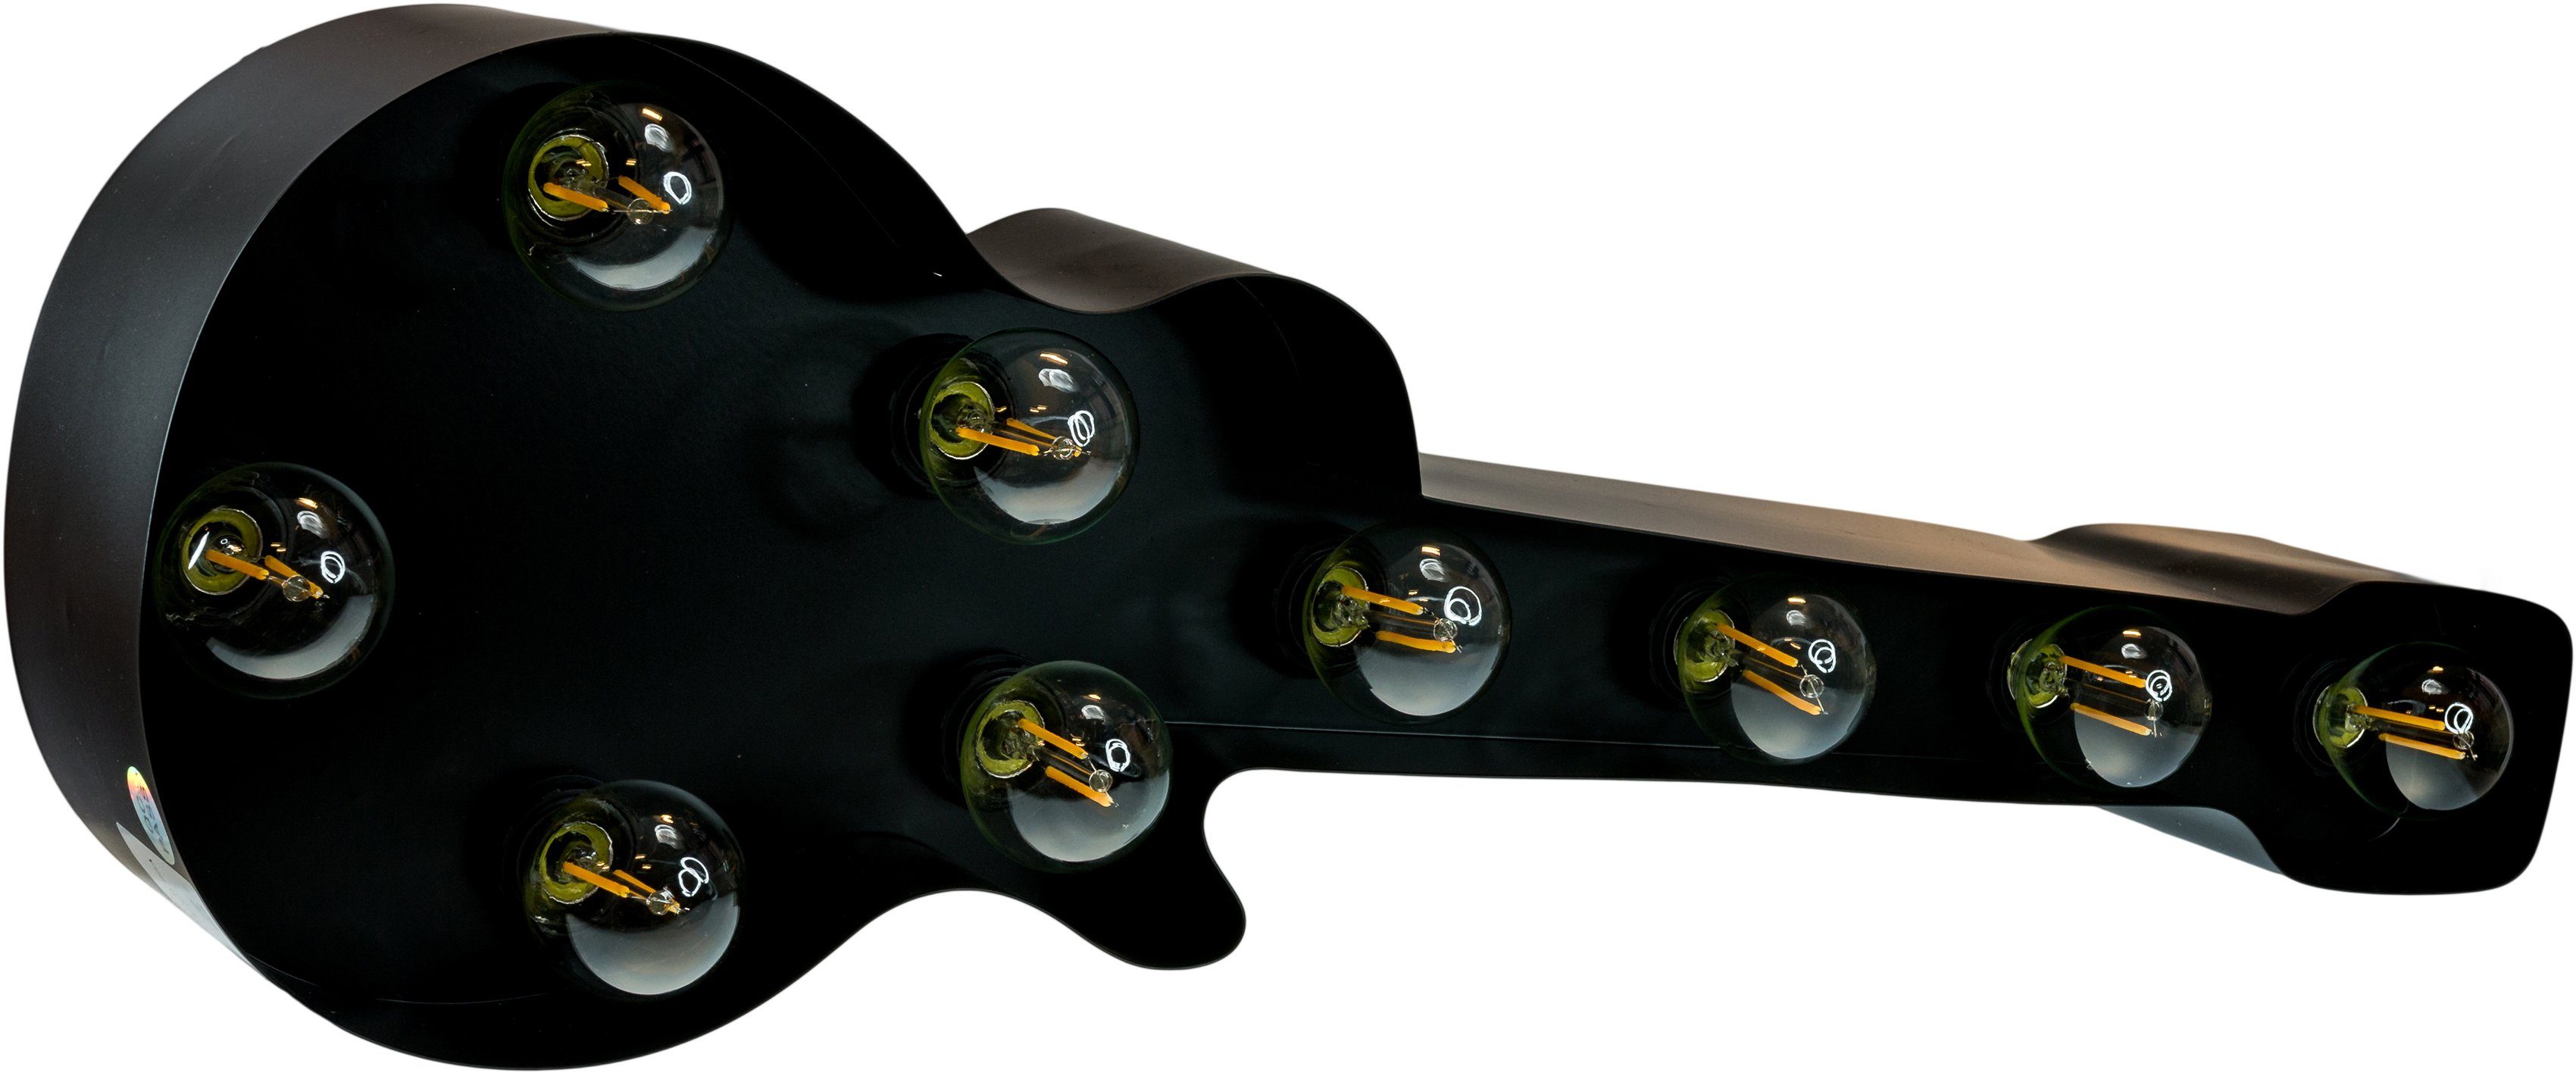 MARQUEE LIGHTS LED Dekolicht schwarz Tischlampe - 9 E14 Warmweiß, Lichtquellen Guitar (exkl) Old 61x38cm Old Guitar, Wandlampe, Leuchtmittel, ohne